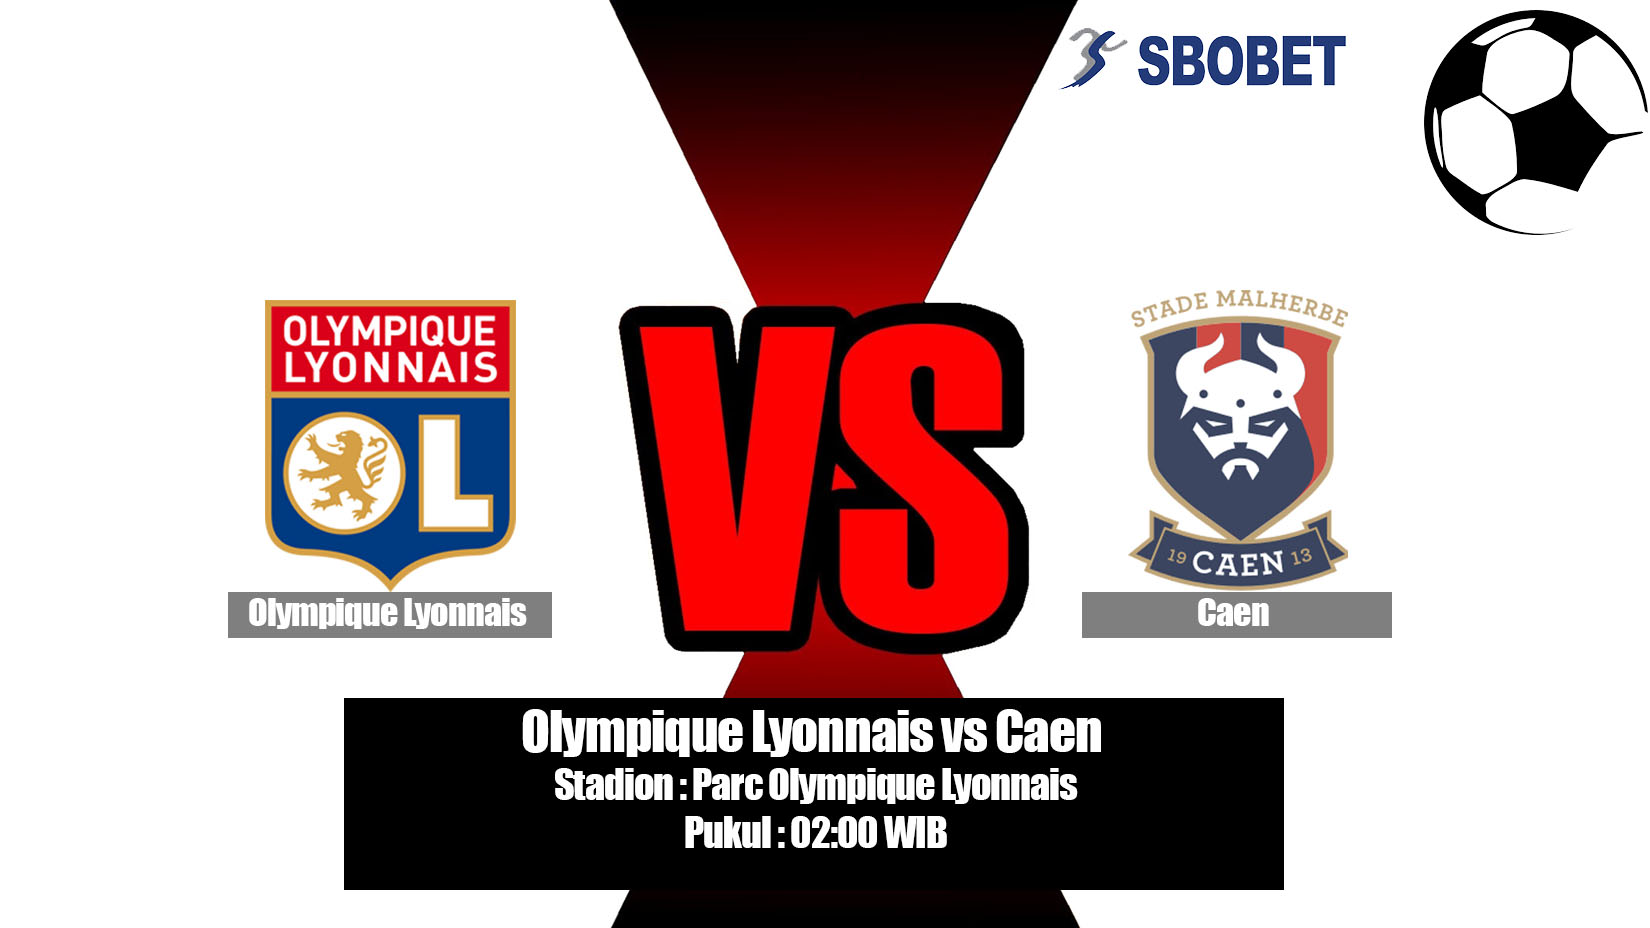 Prediksi Bola Olympique Lyonnais vs Caen 19 Mei 2019